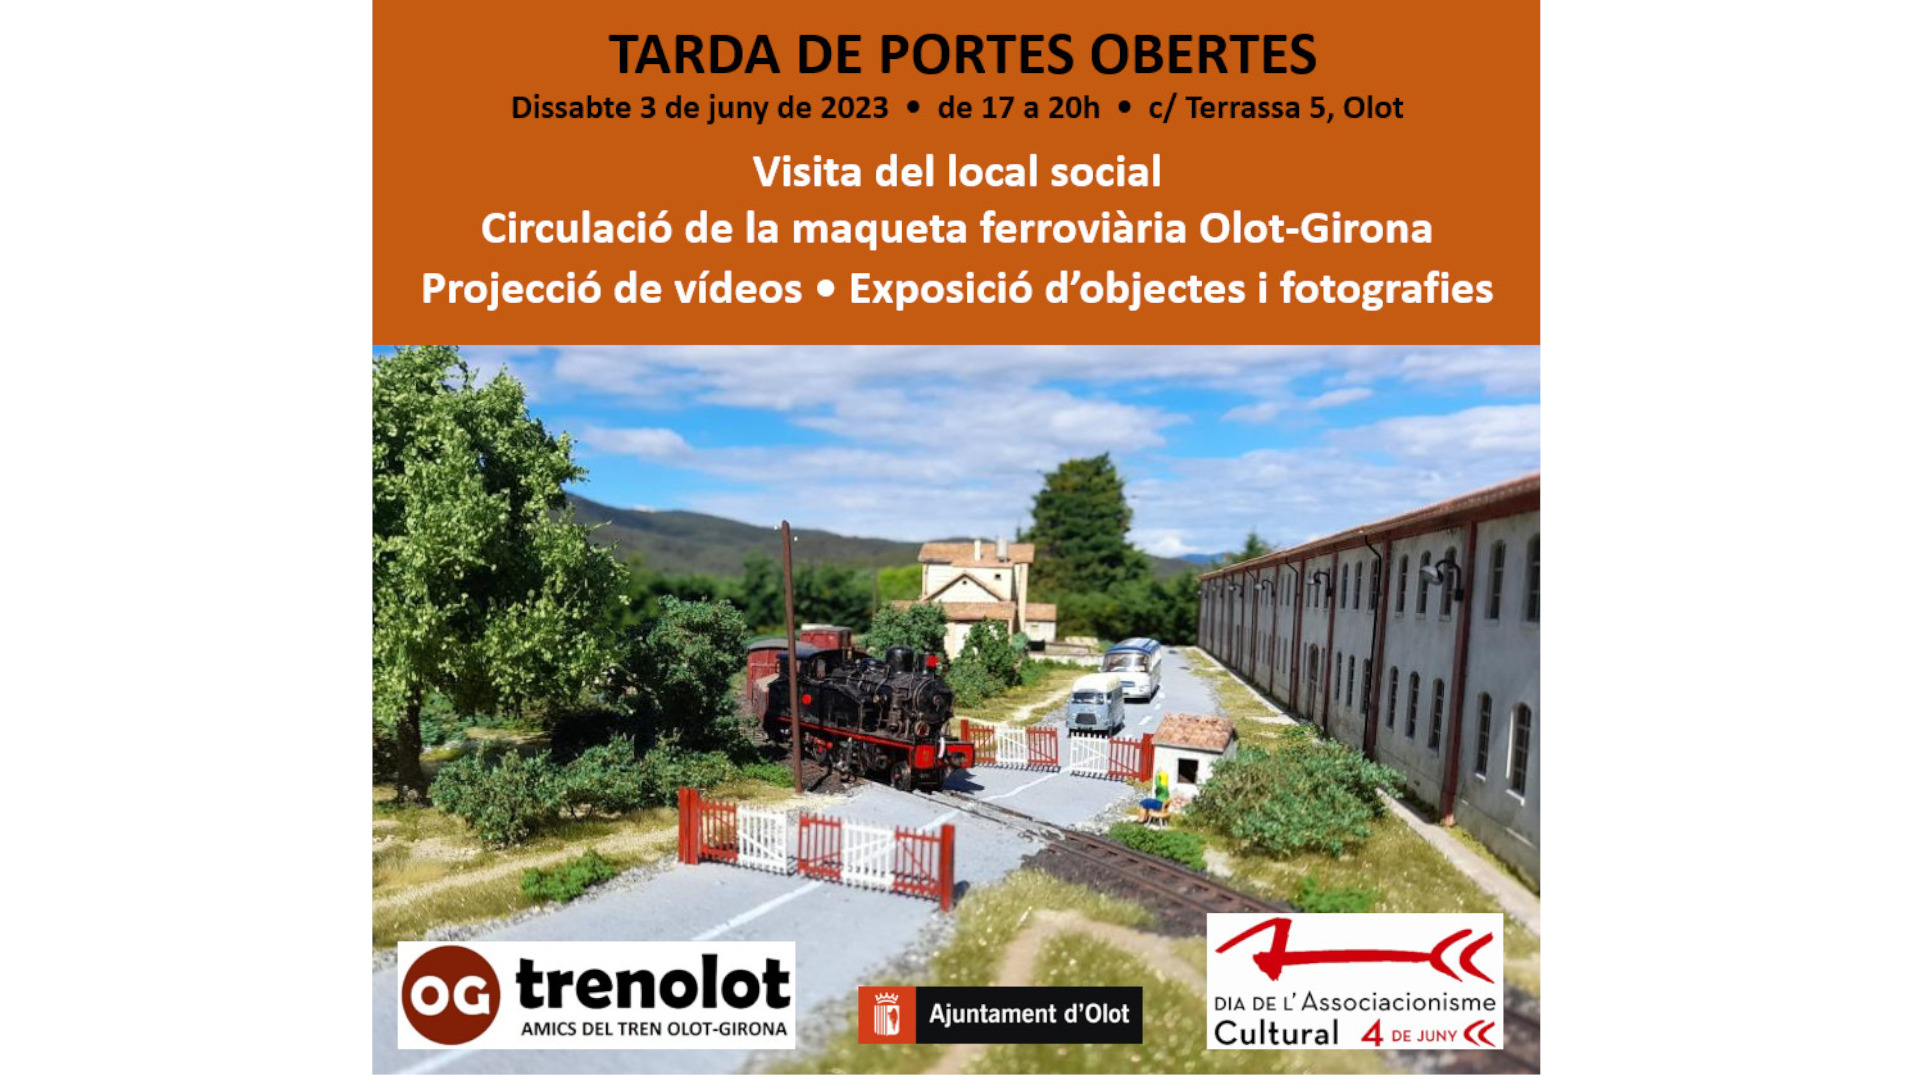 Tarda de portes obertes al local social dels Amics del Tren Olot-Girona